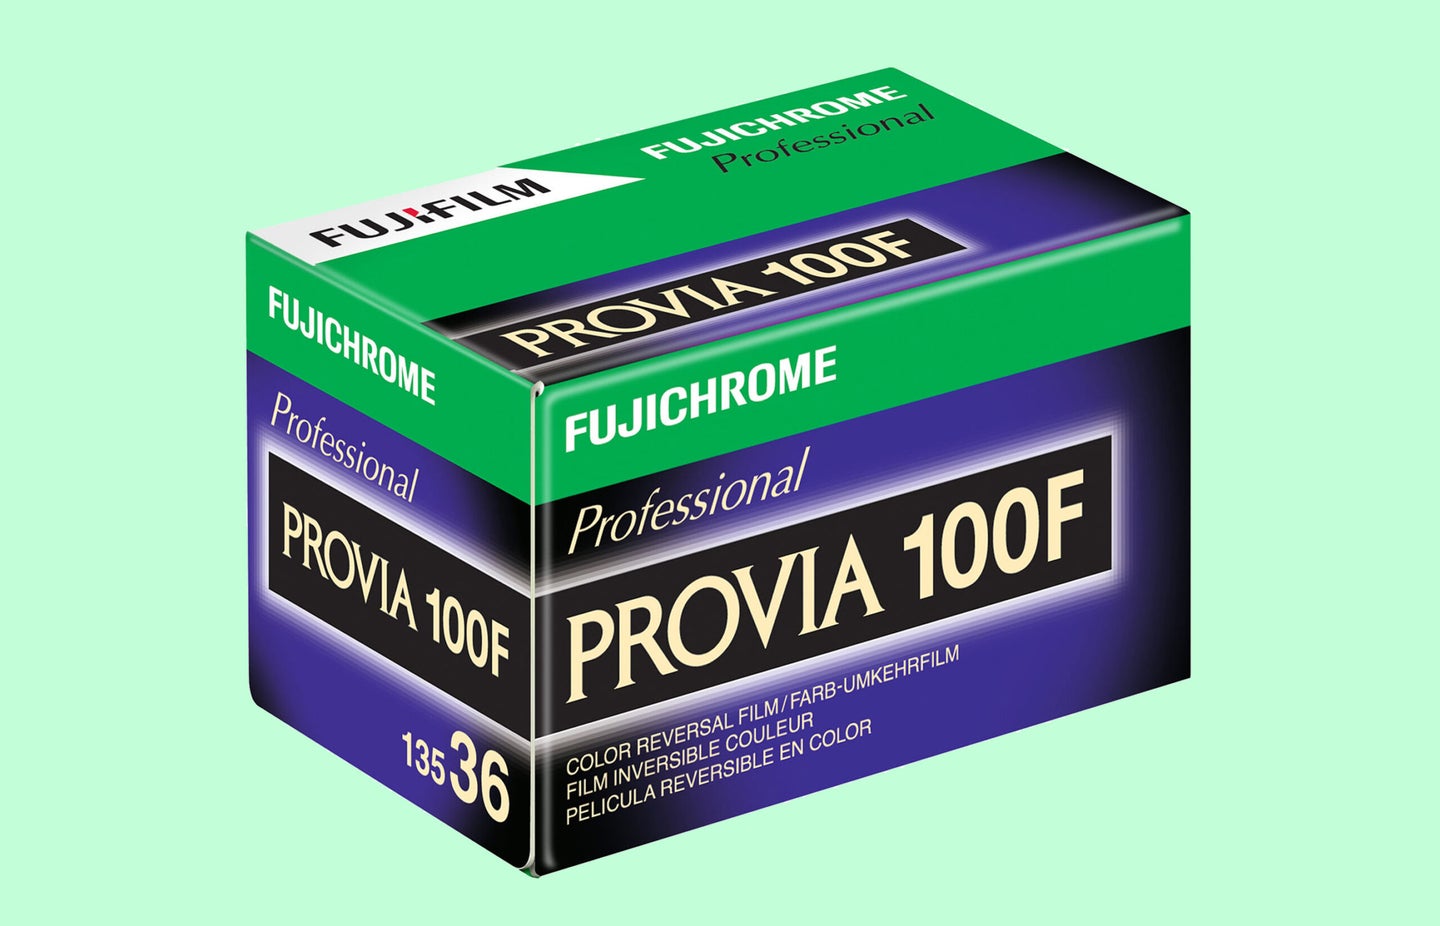 A box of Fujifilm Provia 100F